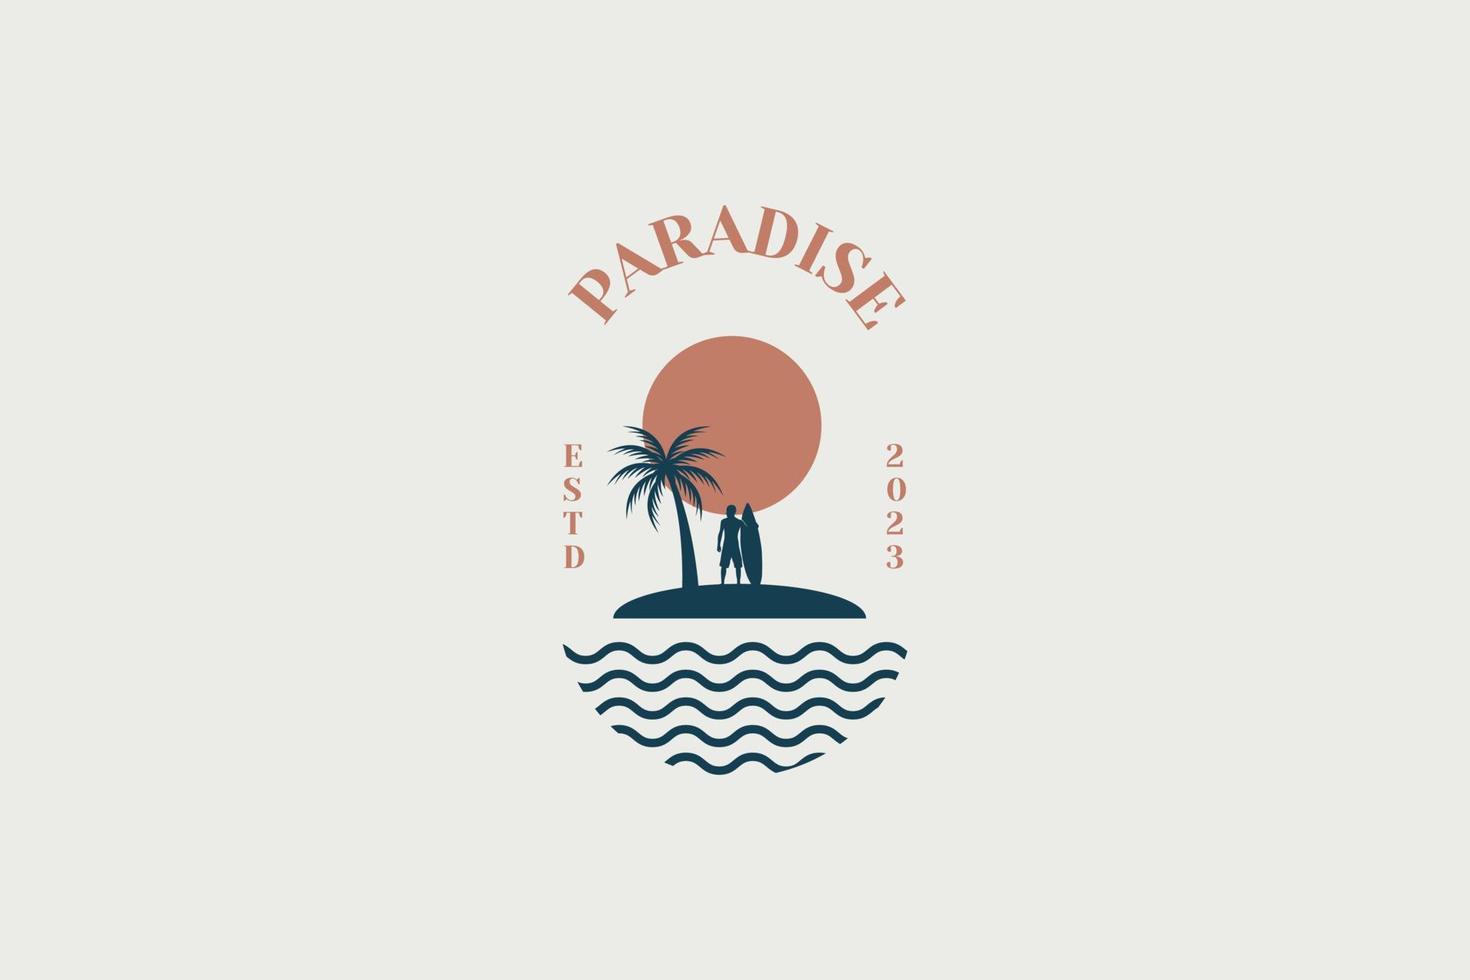 plantilla de diseño de logotipo vectorial con palmera - insignia y emblema abstractos de verano y vacaciones vector